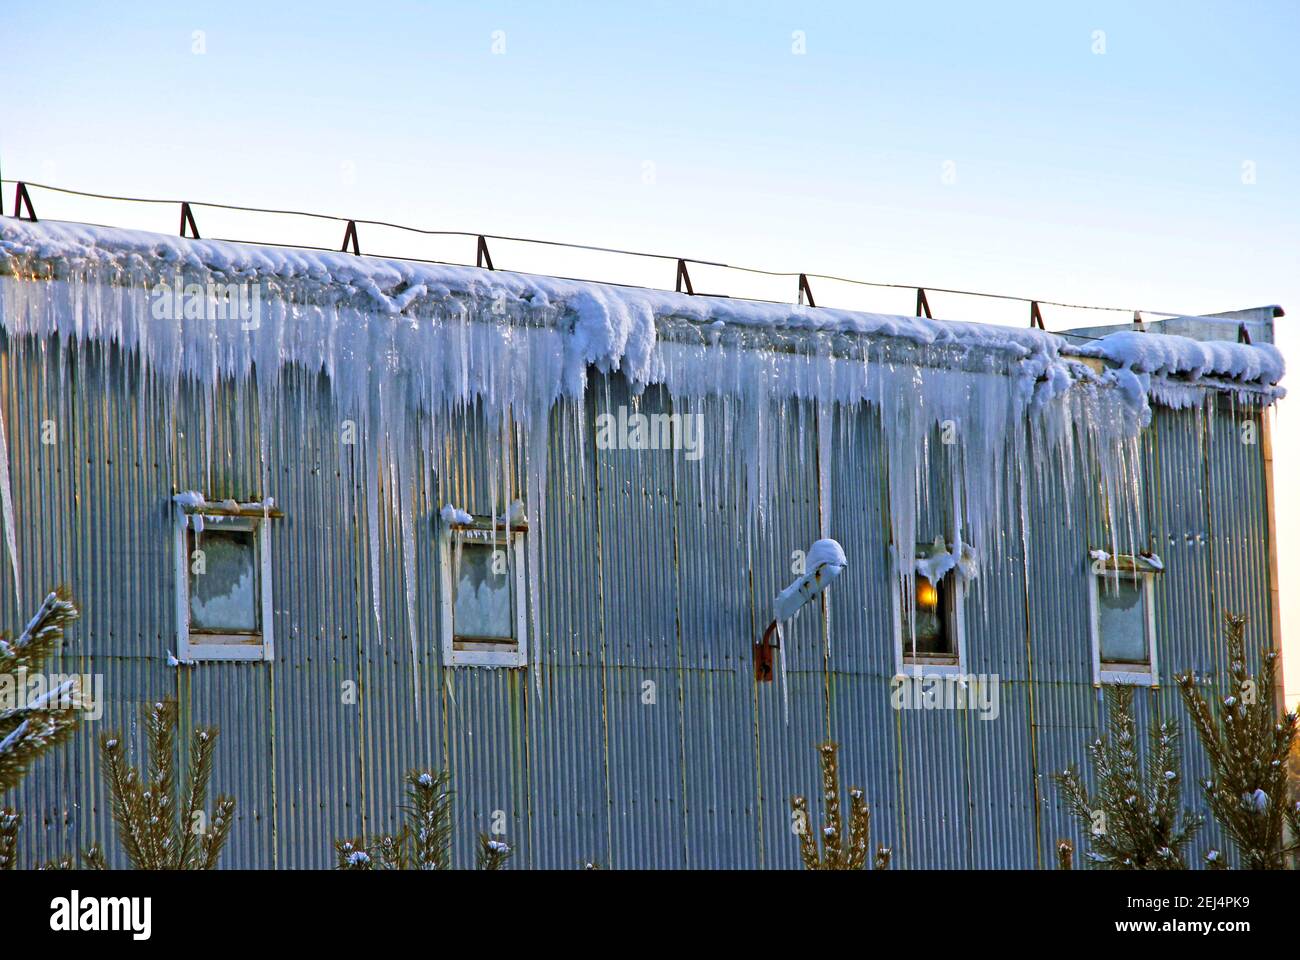 Ein Stahlbauanhänger und Eiszapfen hängen wie ein gefrorener Wasserfall von seinem Dach. Eines der vier Fenster hat ein Licht an. Kleine Fichten wachsen herum. Stockfoto